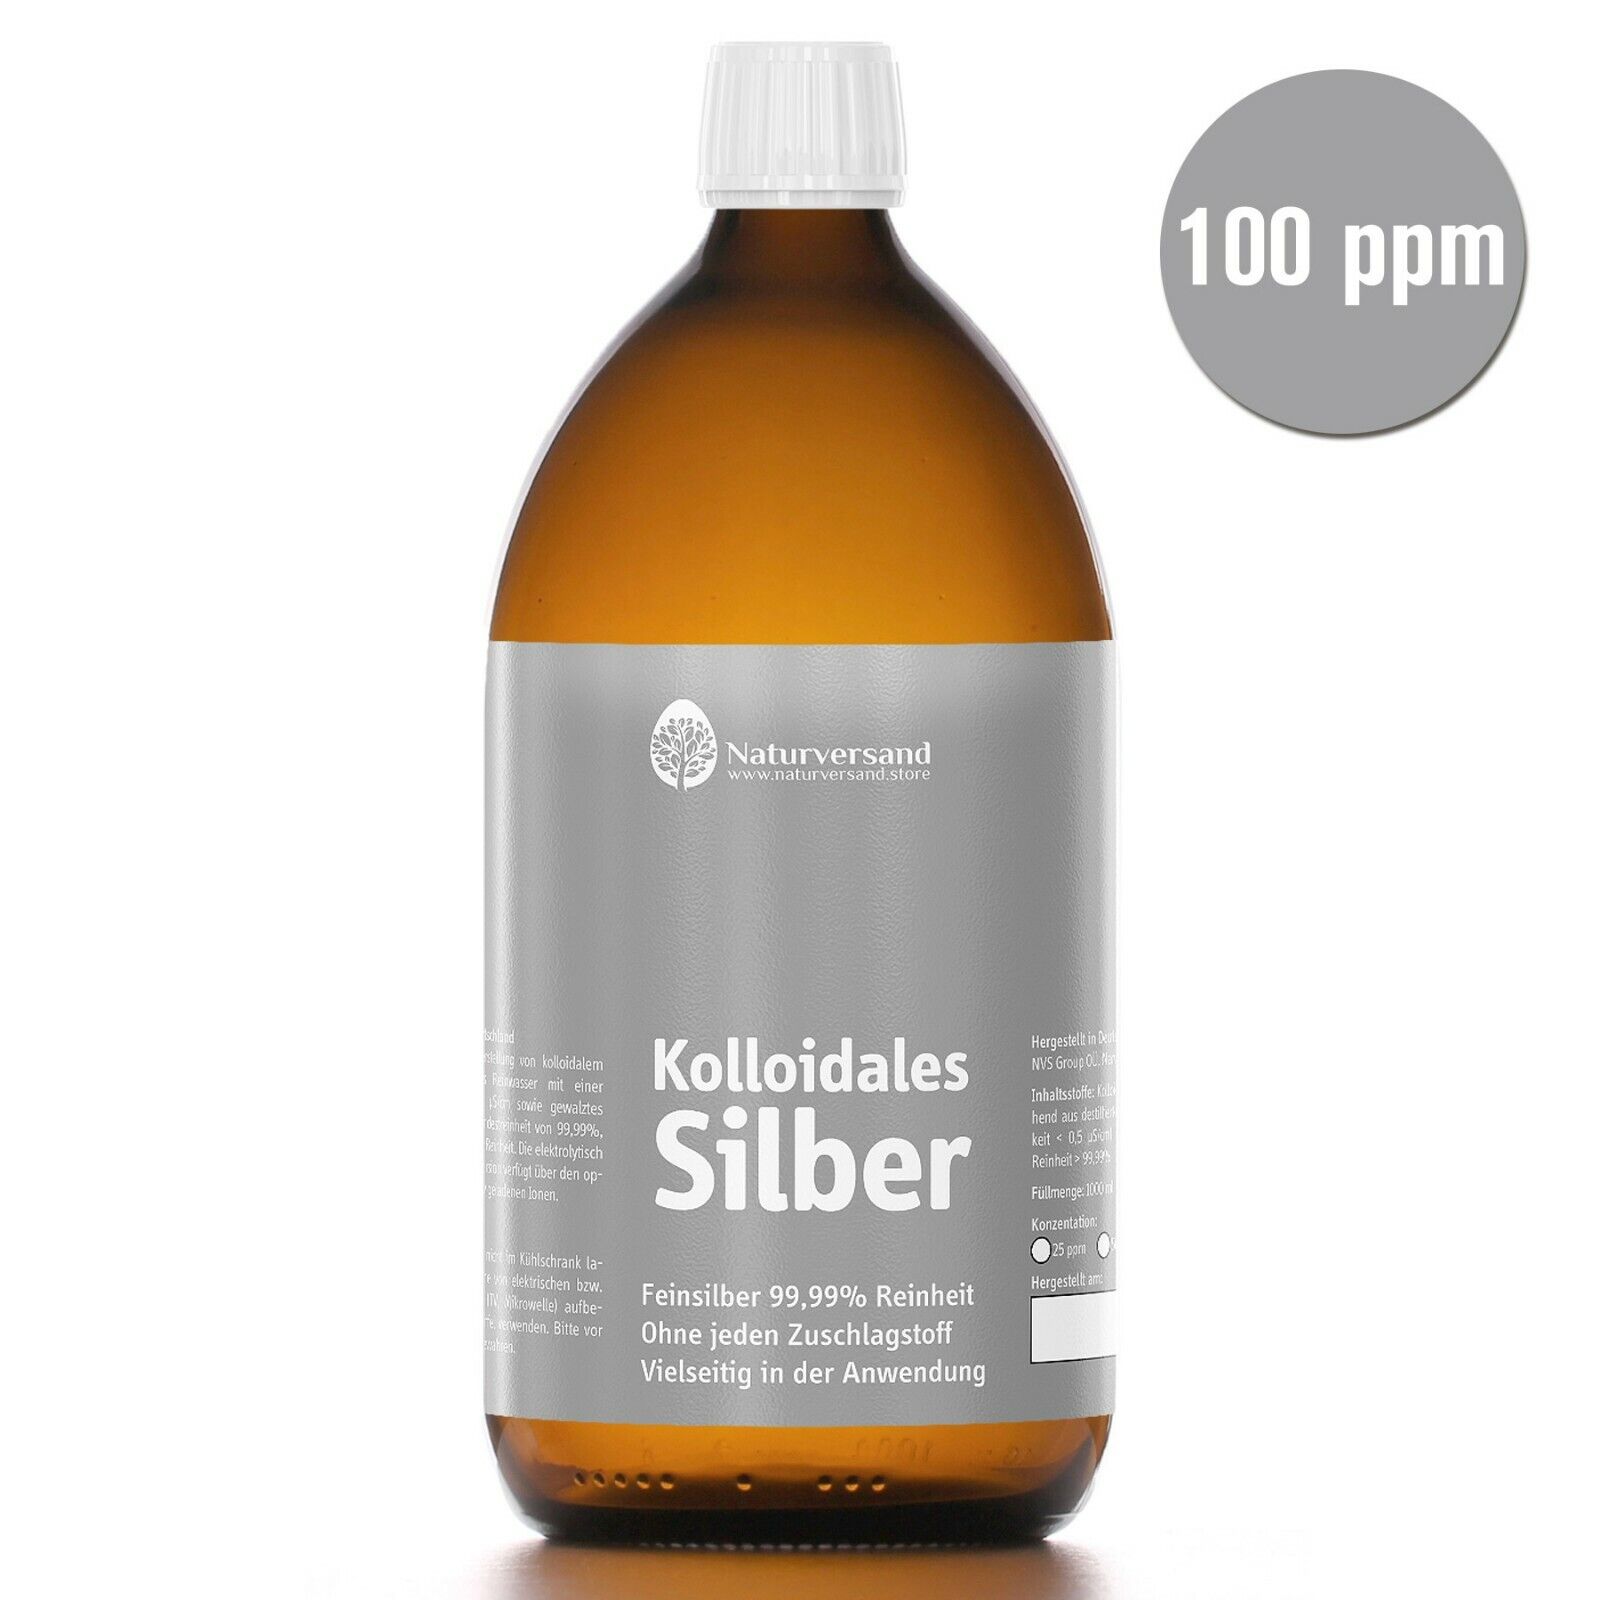 Kolloidales Silber (Silberwasser) 3x 1000ml (3 Liter), hoch konzentriert, 100ppm